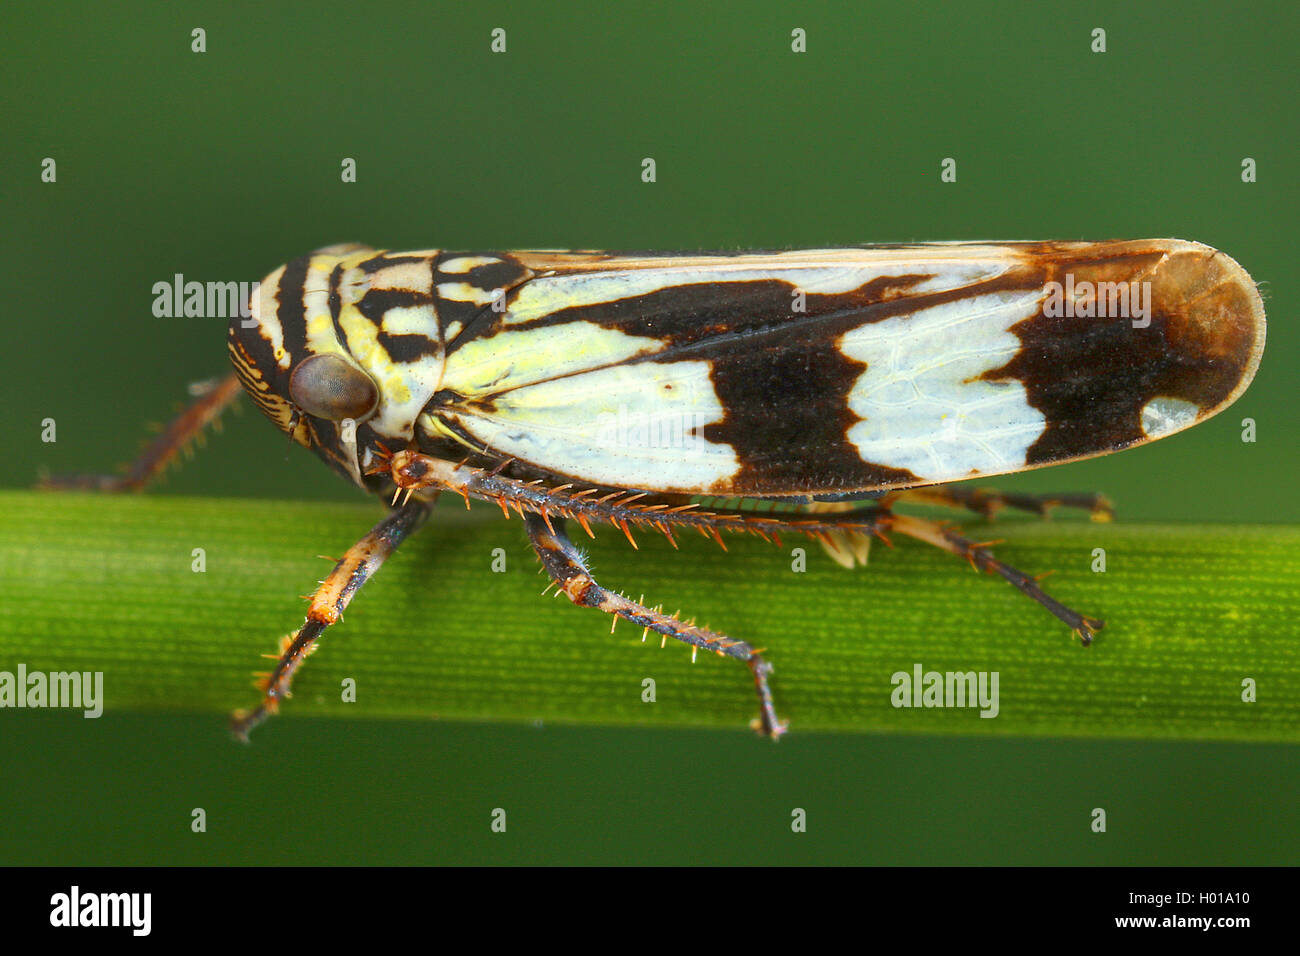 Zwergzikade, Aglena ornata (Aglena ornata), auf einem Staengel, Rumaenien | leafhopper (Aglena ornata), on a stem, Romania | BLW Stock Photo